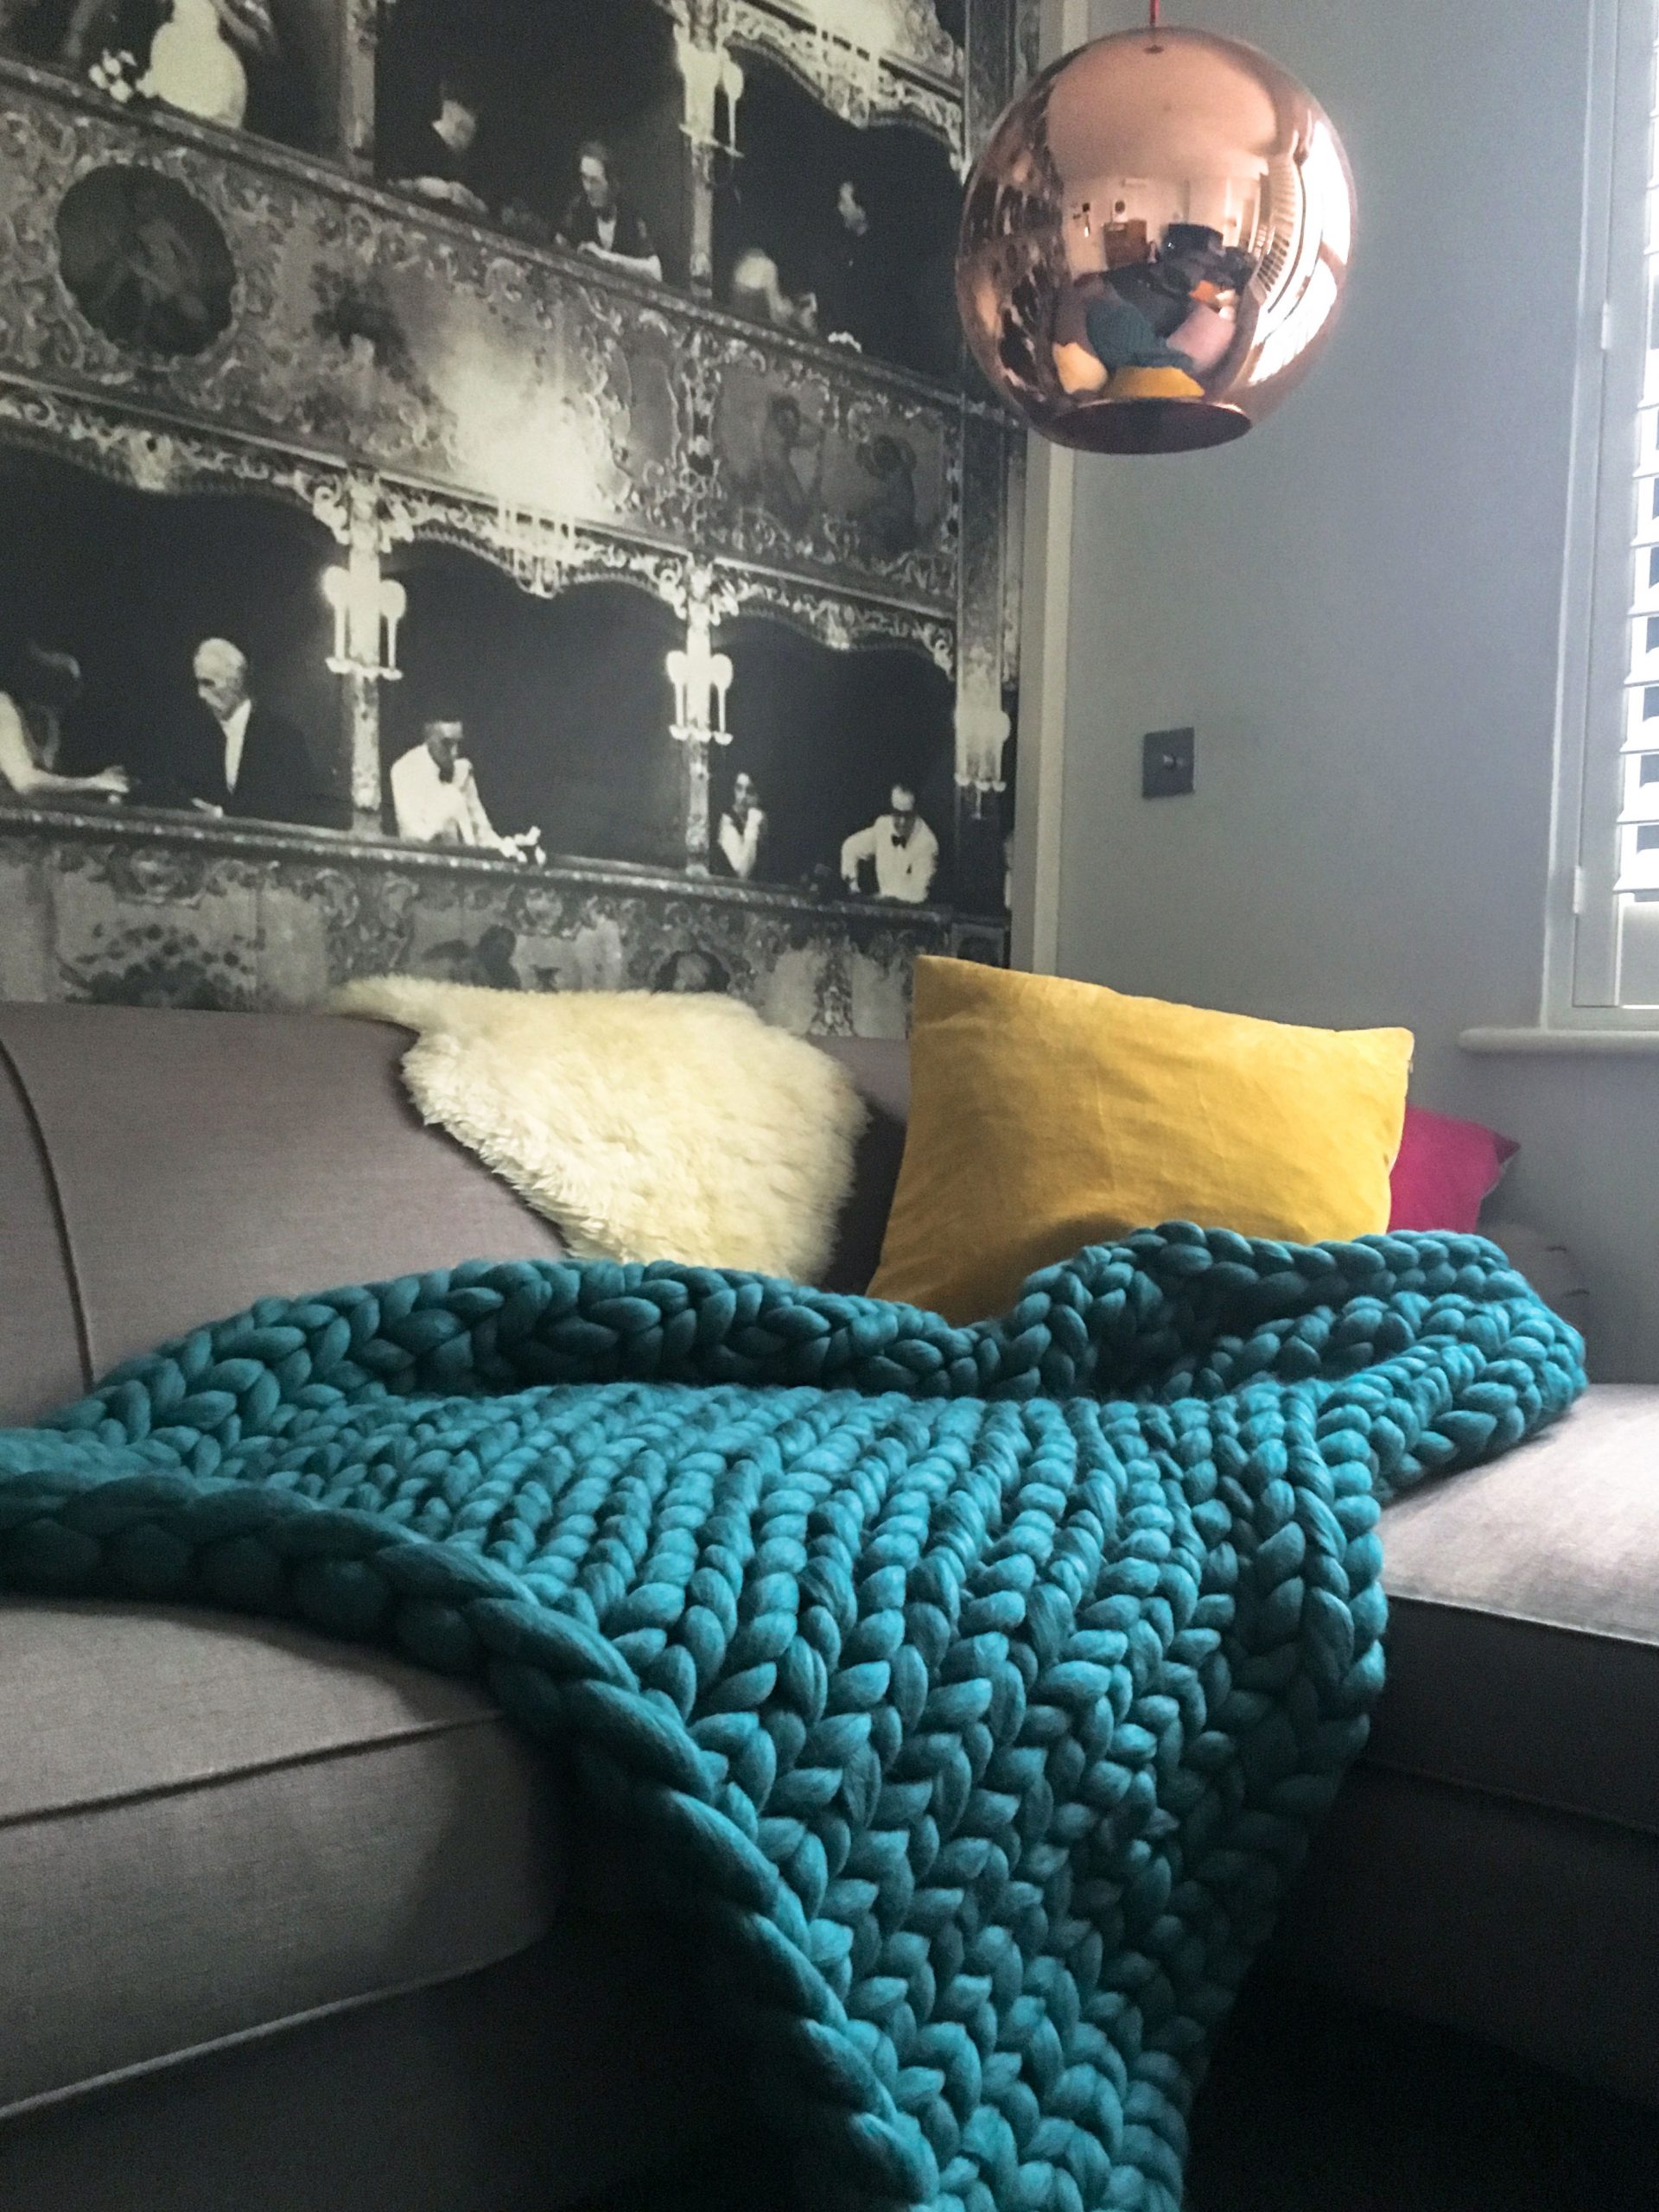 Knitting Kit - Knit your own Giant Blanket - Lauren Aston Designs